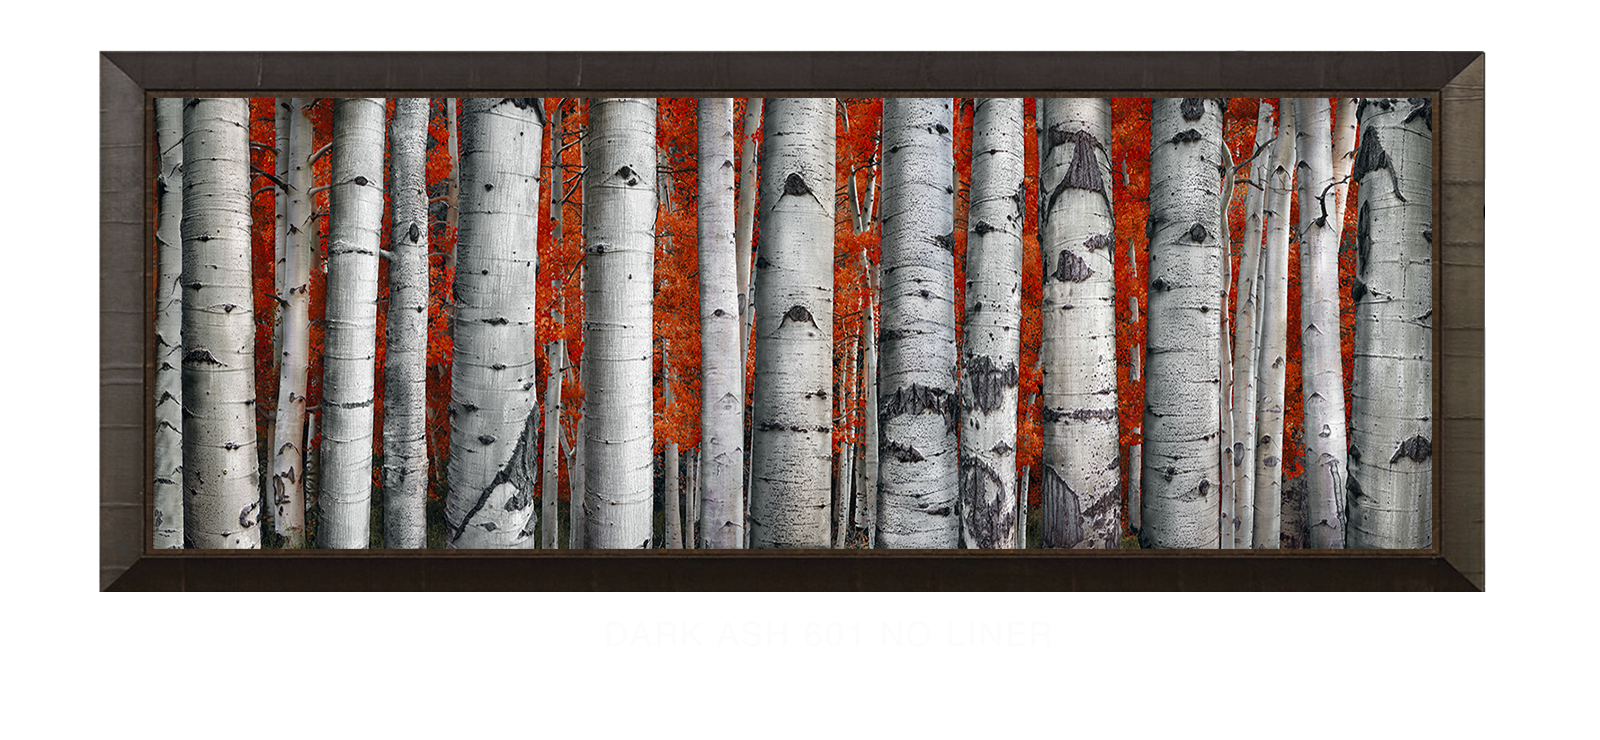 28ASPEN Dark Ash 601 w_No Liner T